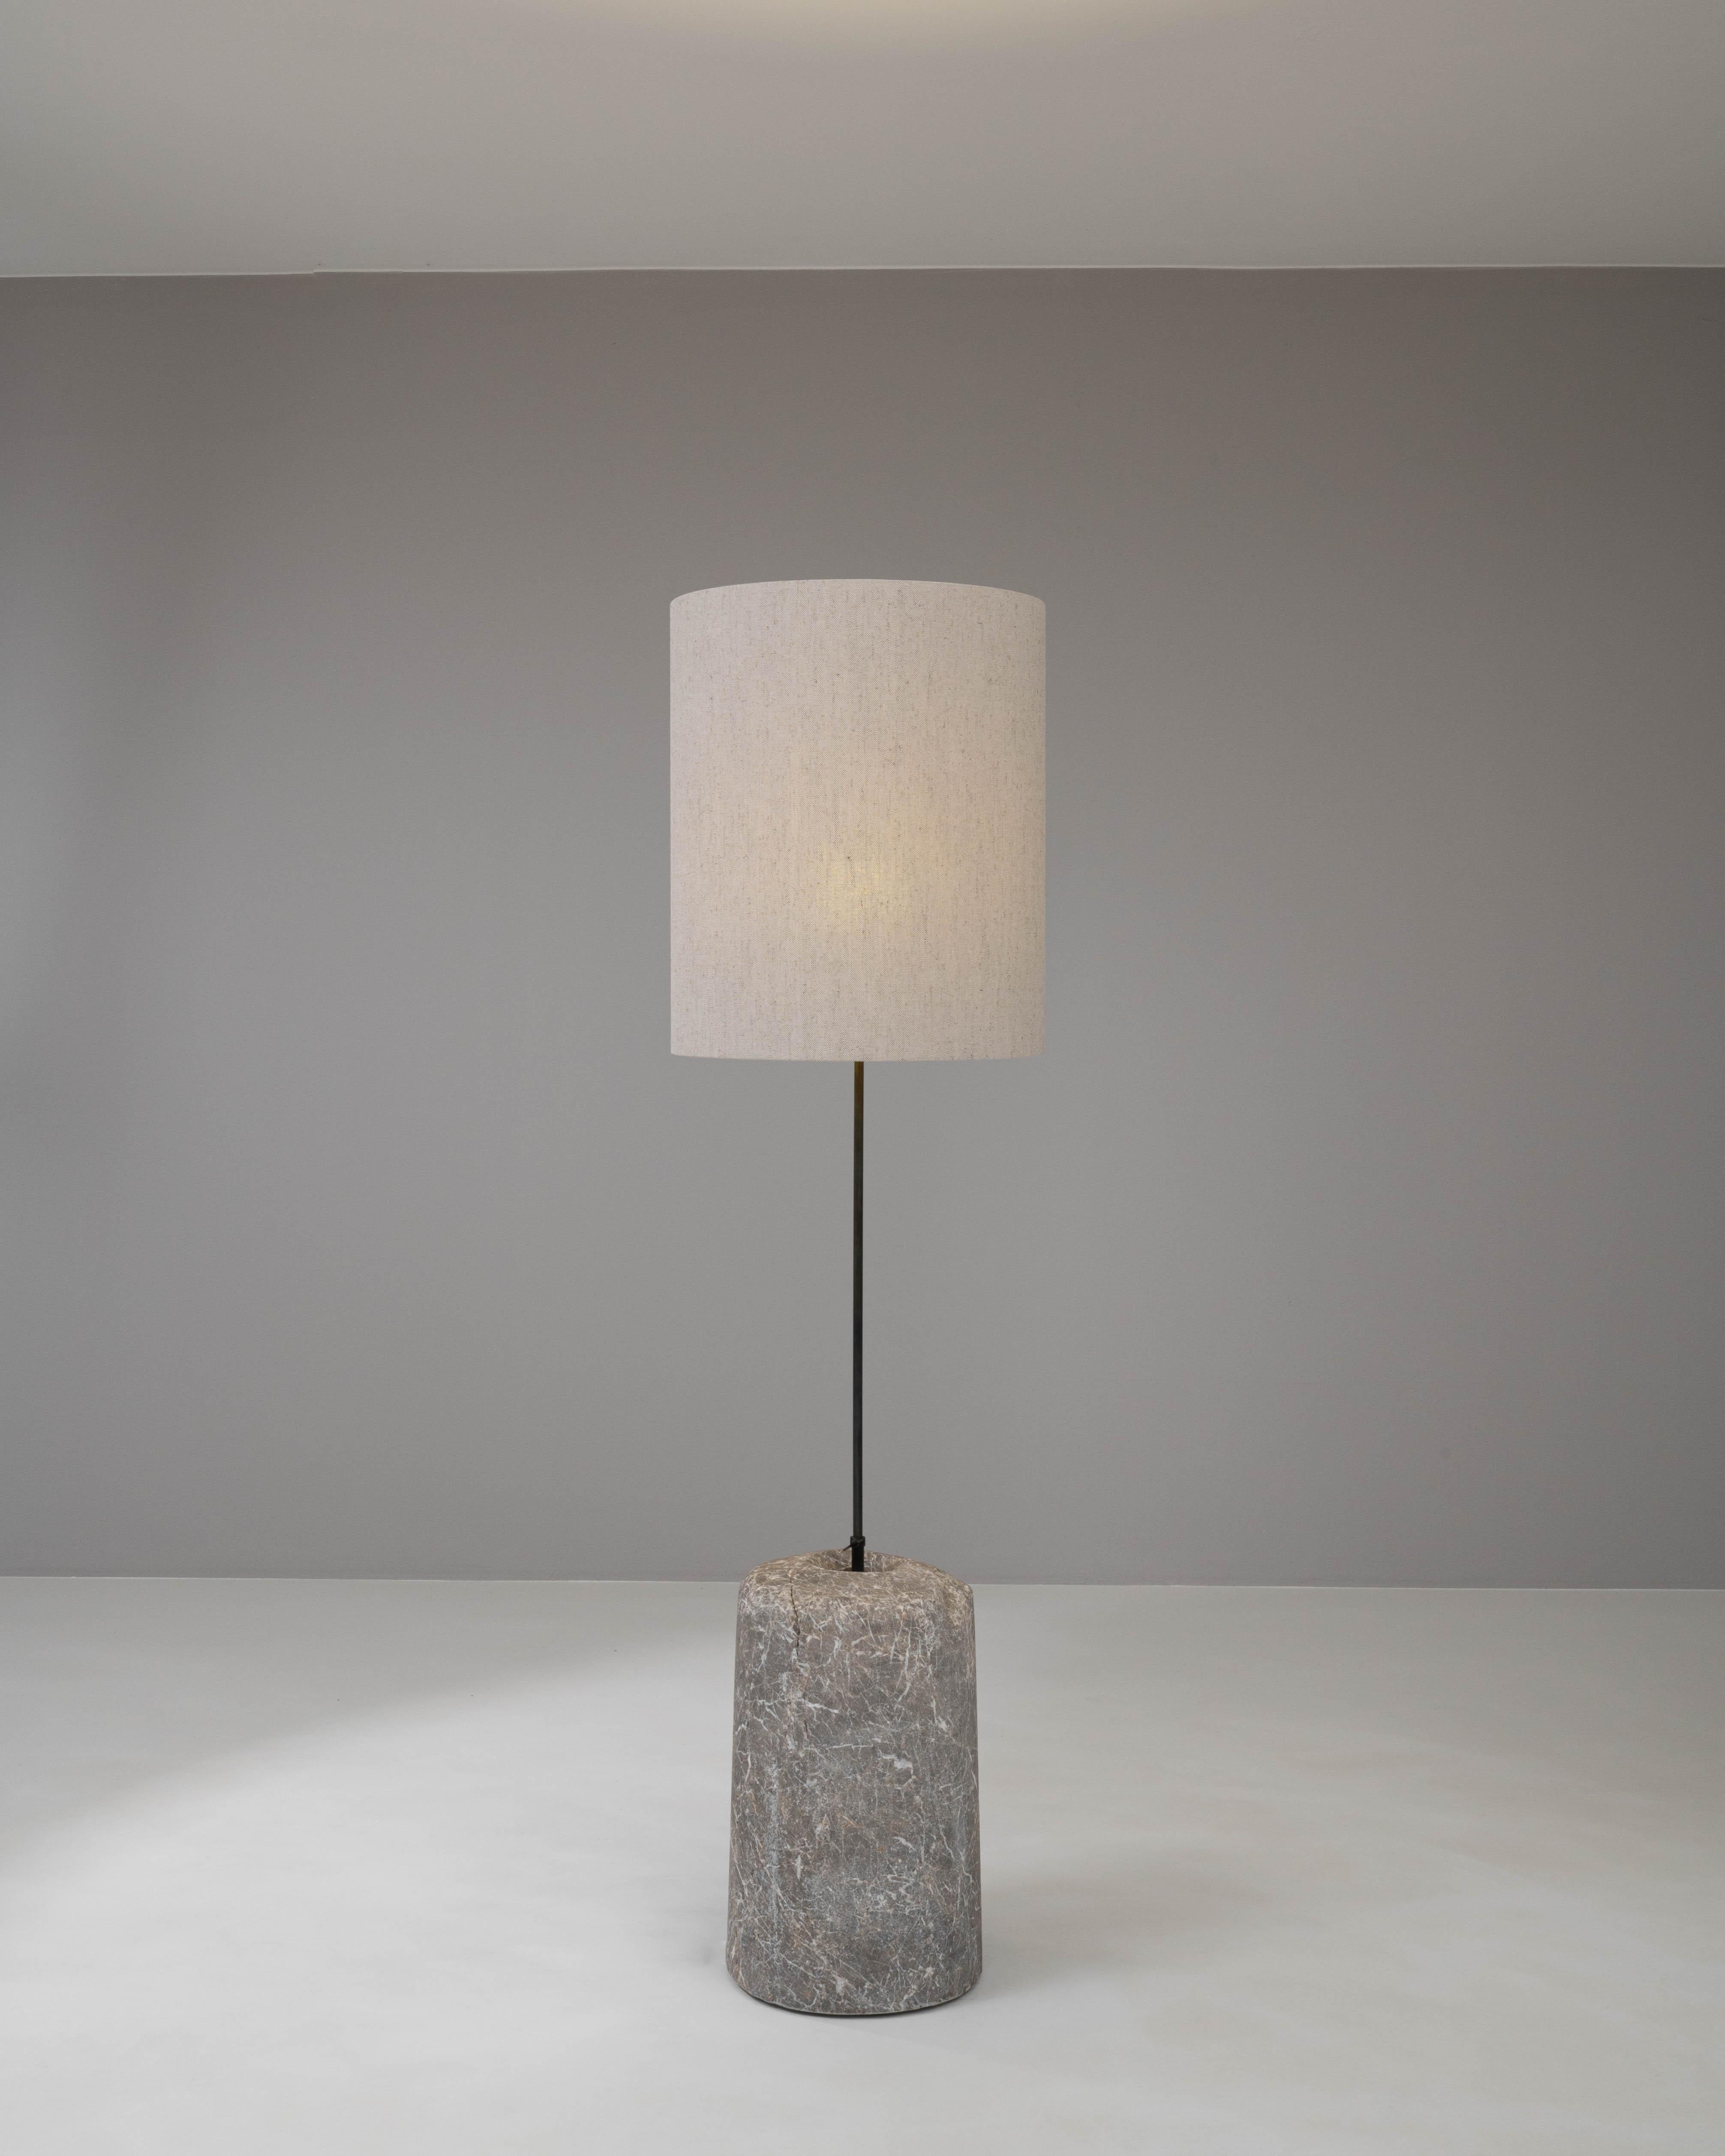 Ancrez votre espace avec la solidité et la sophistication de ce lampadaire européen des années 1900, une fusion de marbre naturel et de métal épuré. La base cylindrique robuste en marbre est une déclaration de l'art de la Nature, avec des veines et